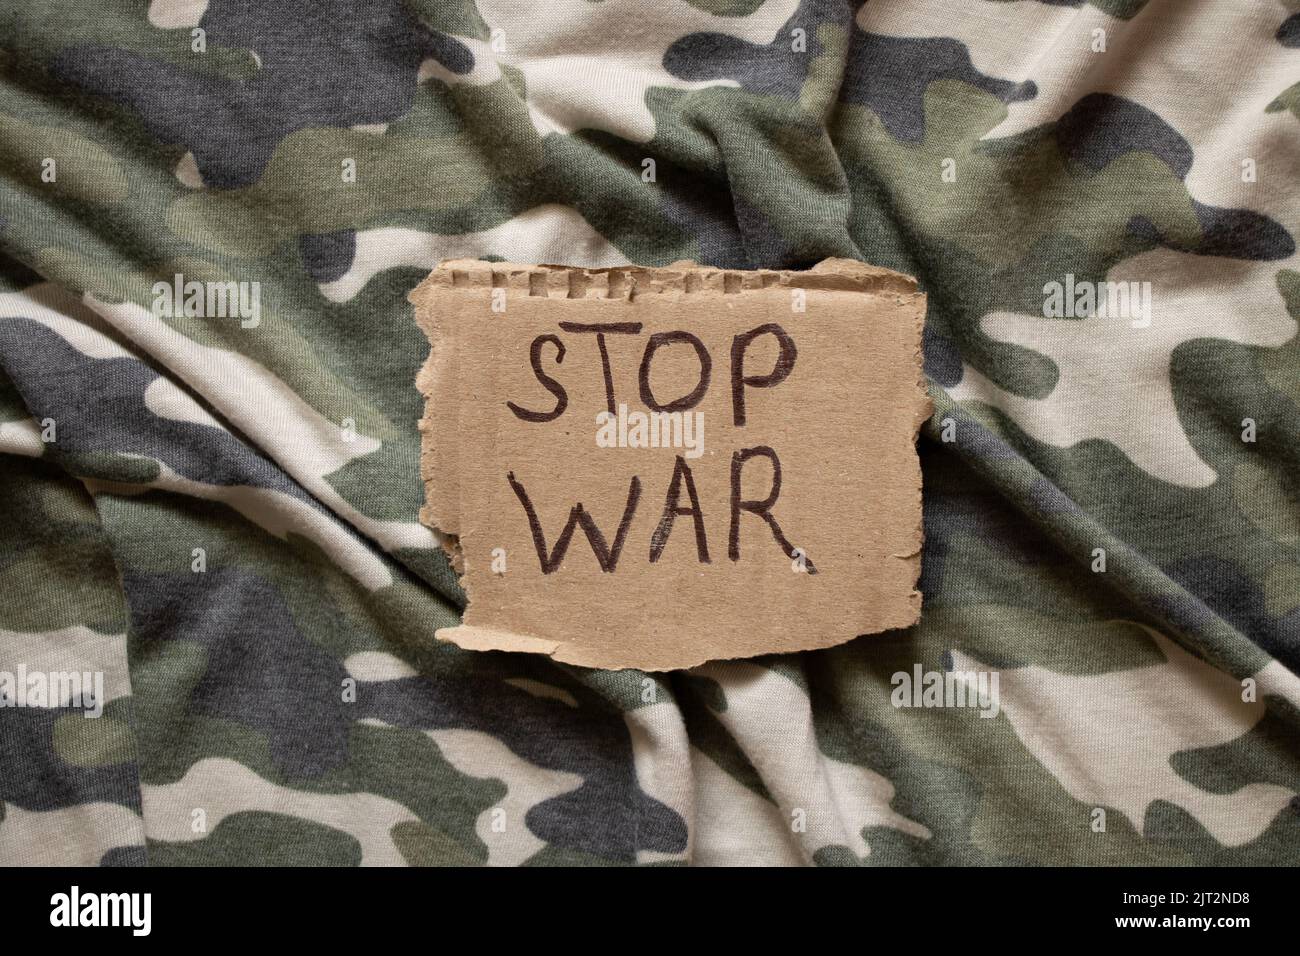 Stop war ist auf Papier geschrieben, das auf der Tarnuniform, Protestaktion, Militärkleidung des Soldaten liegt Stockfoto